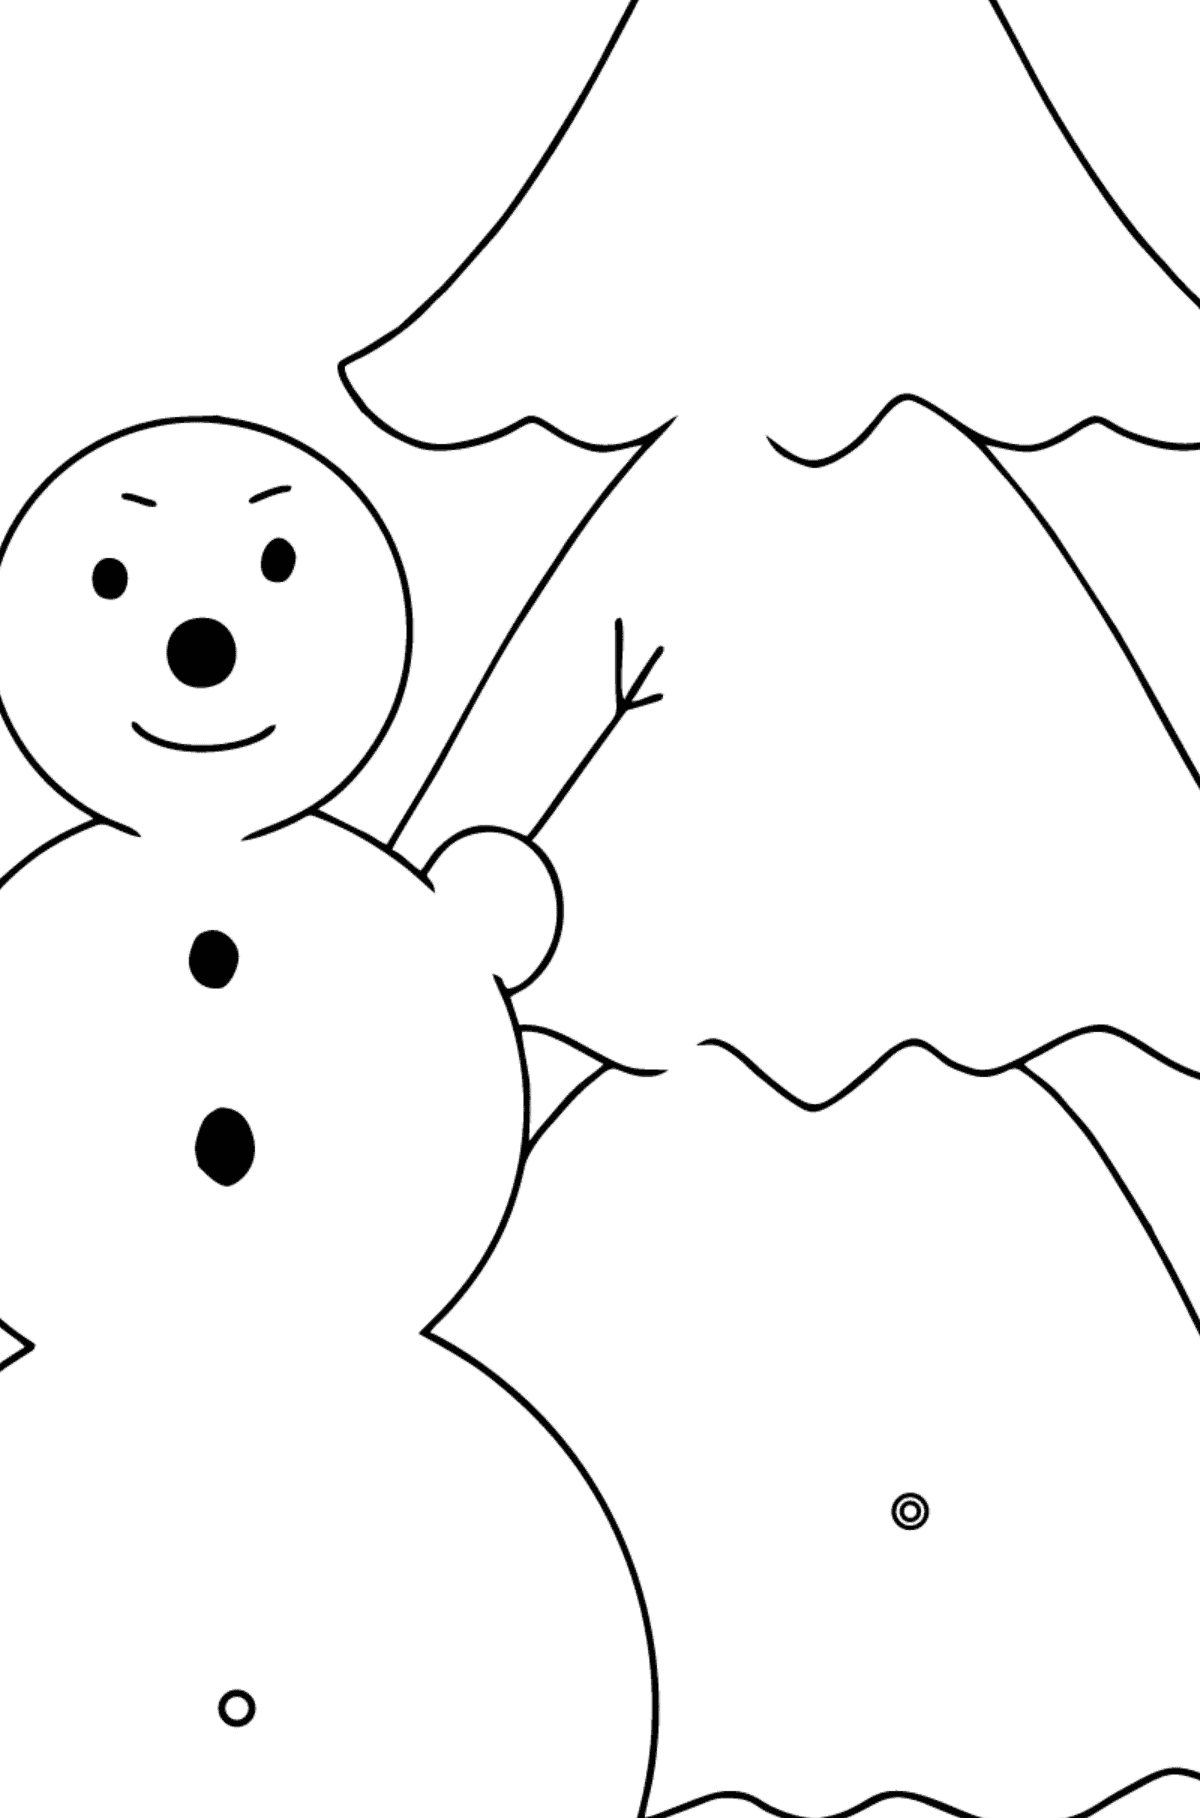 Tegning til farvning snemand og træ (let) - Farvelægning af geometriske figurer for børn